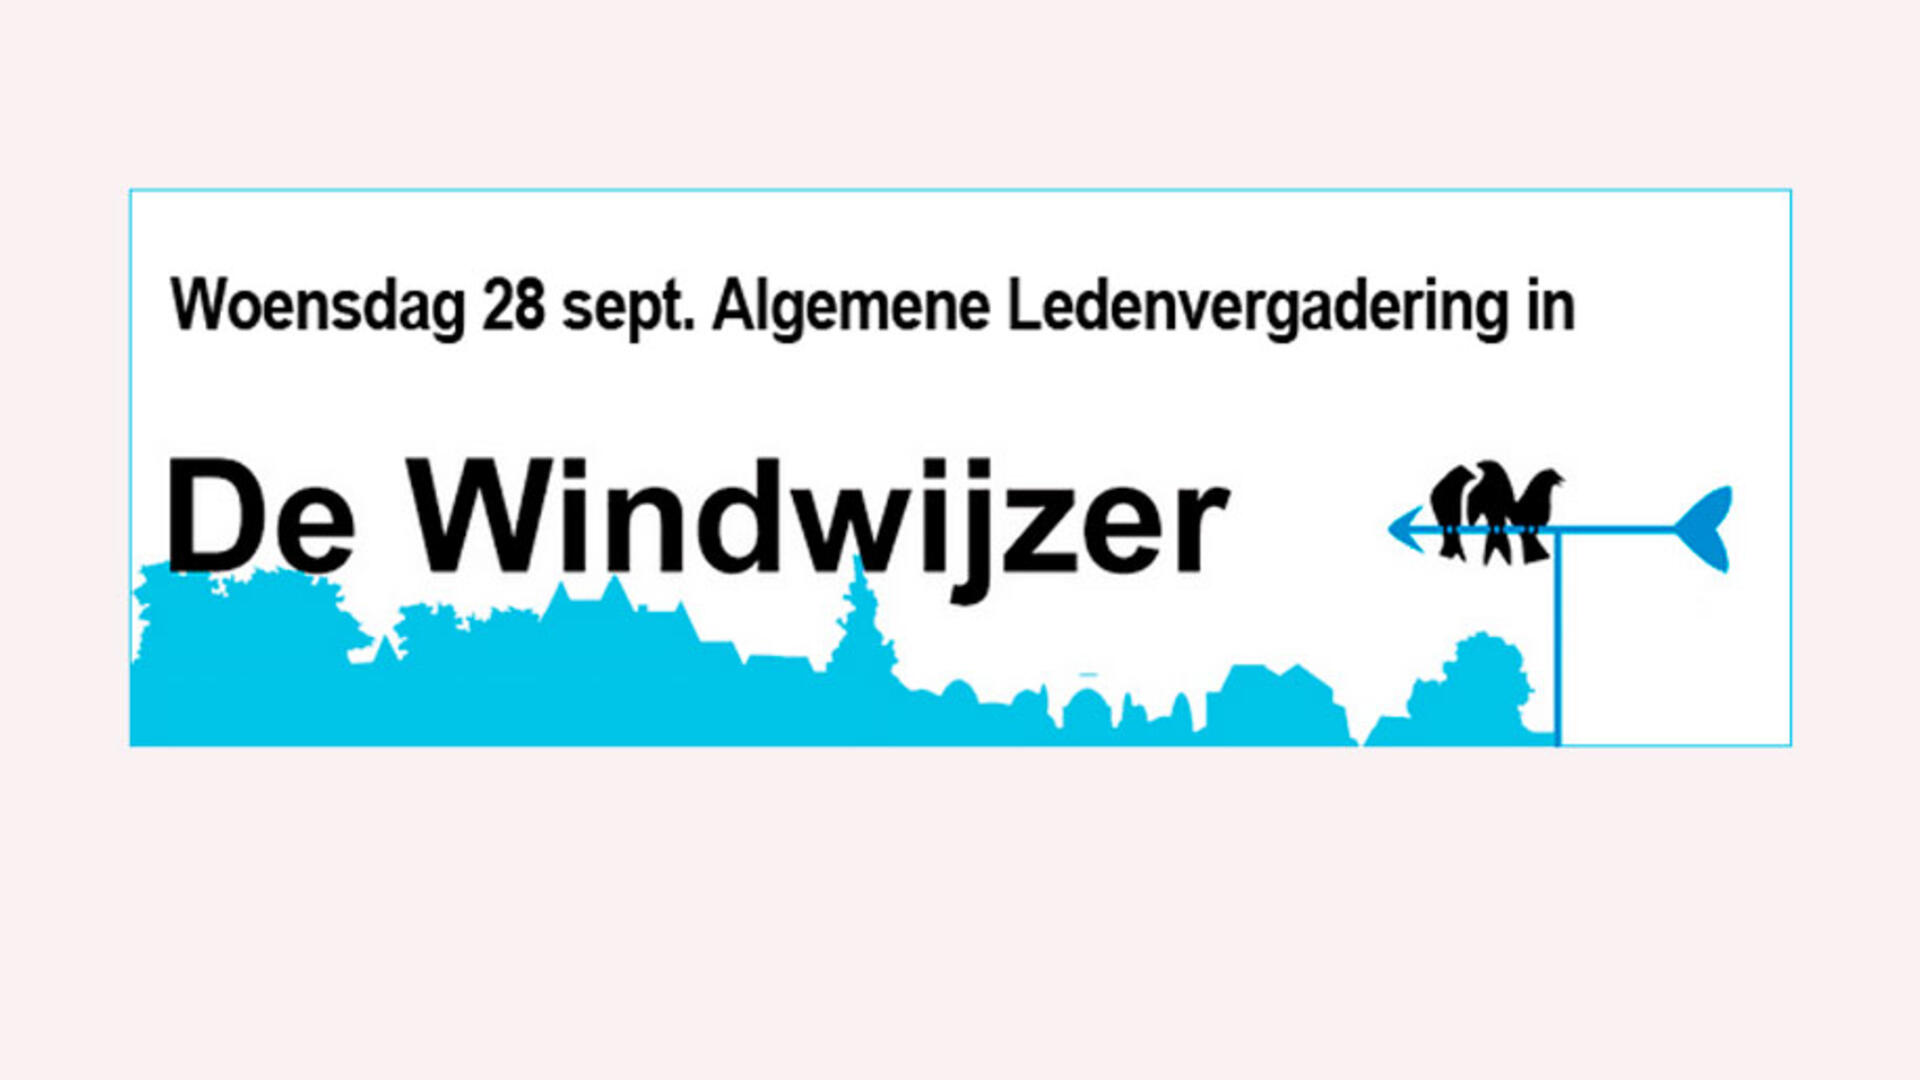 Woensdag 28 sept. ALV in De Windwijzer